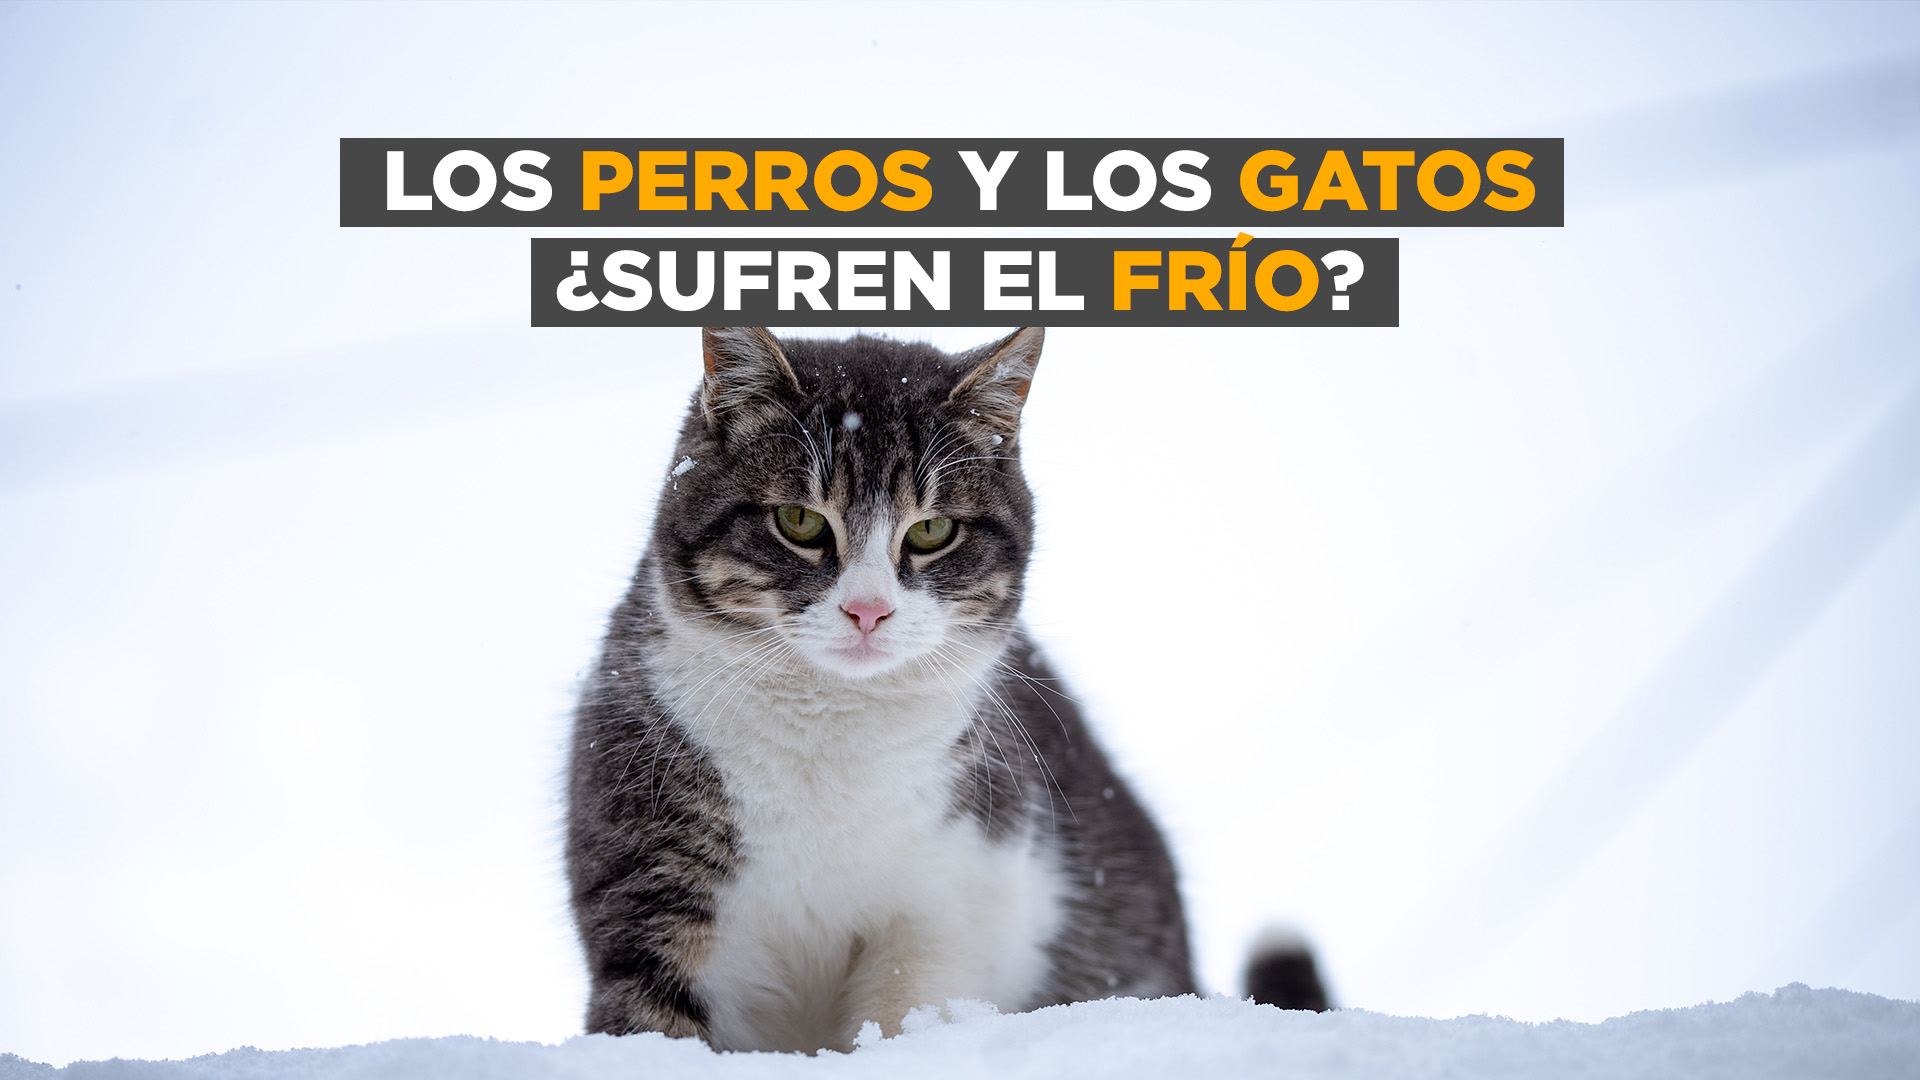 Dr. Romero - Los perros y los gatos sufren el frío #Informe